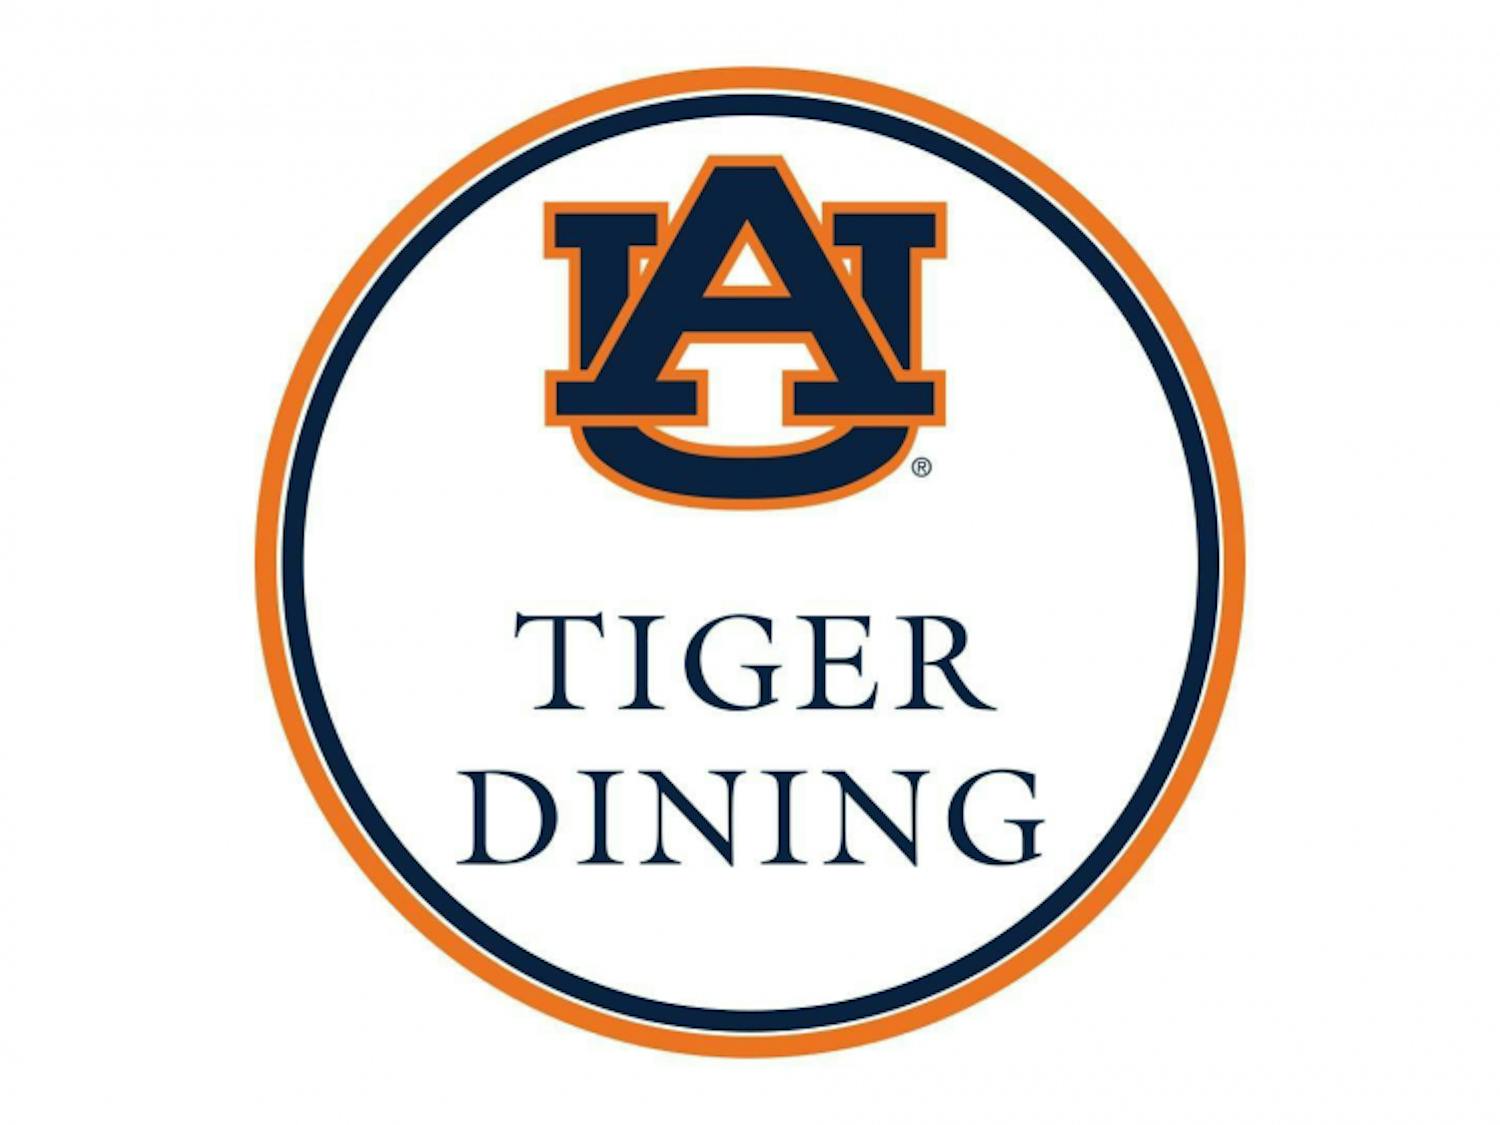 Tiger Dining logo